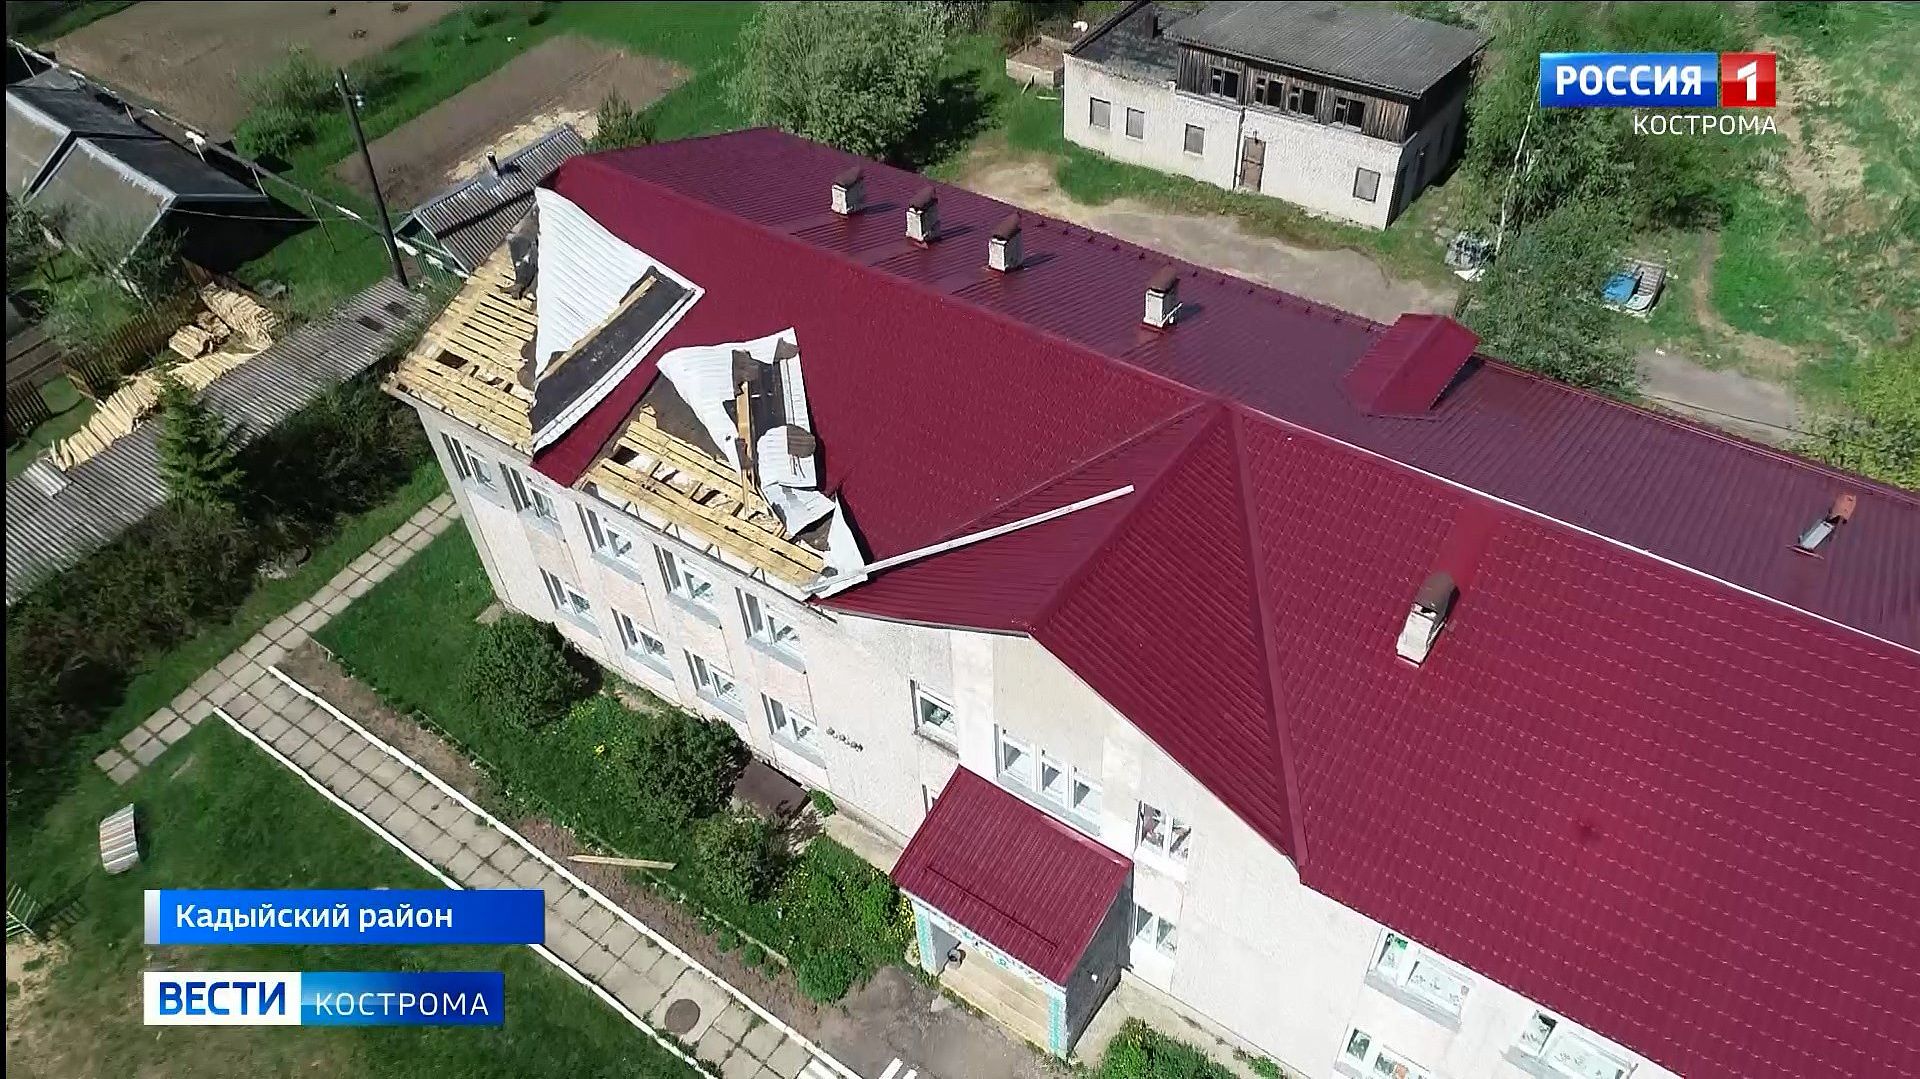 Ураган повредил более ста домов в Кадыйском районе